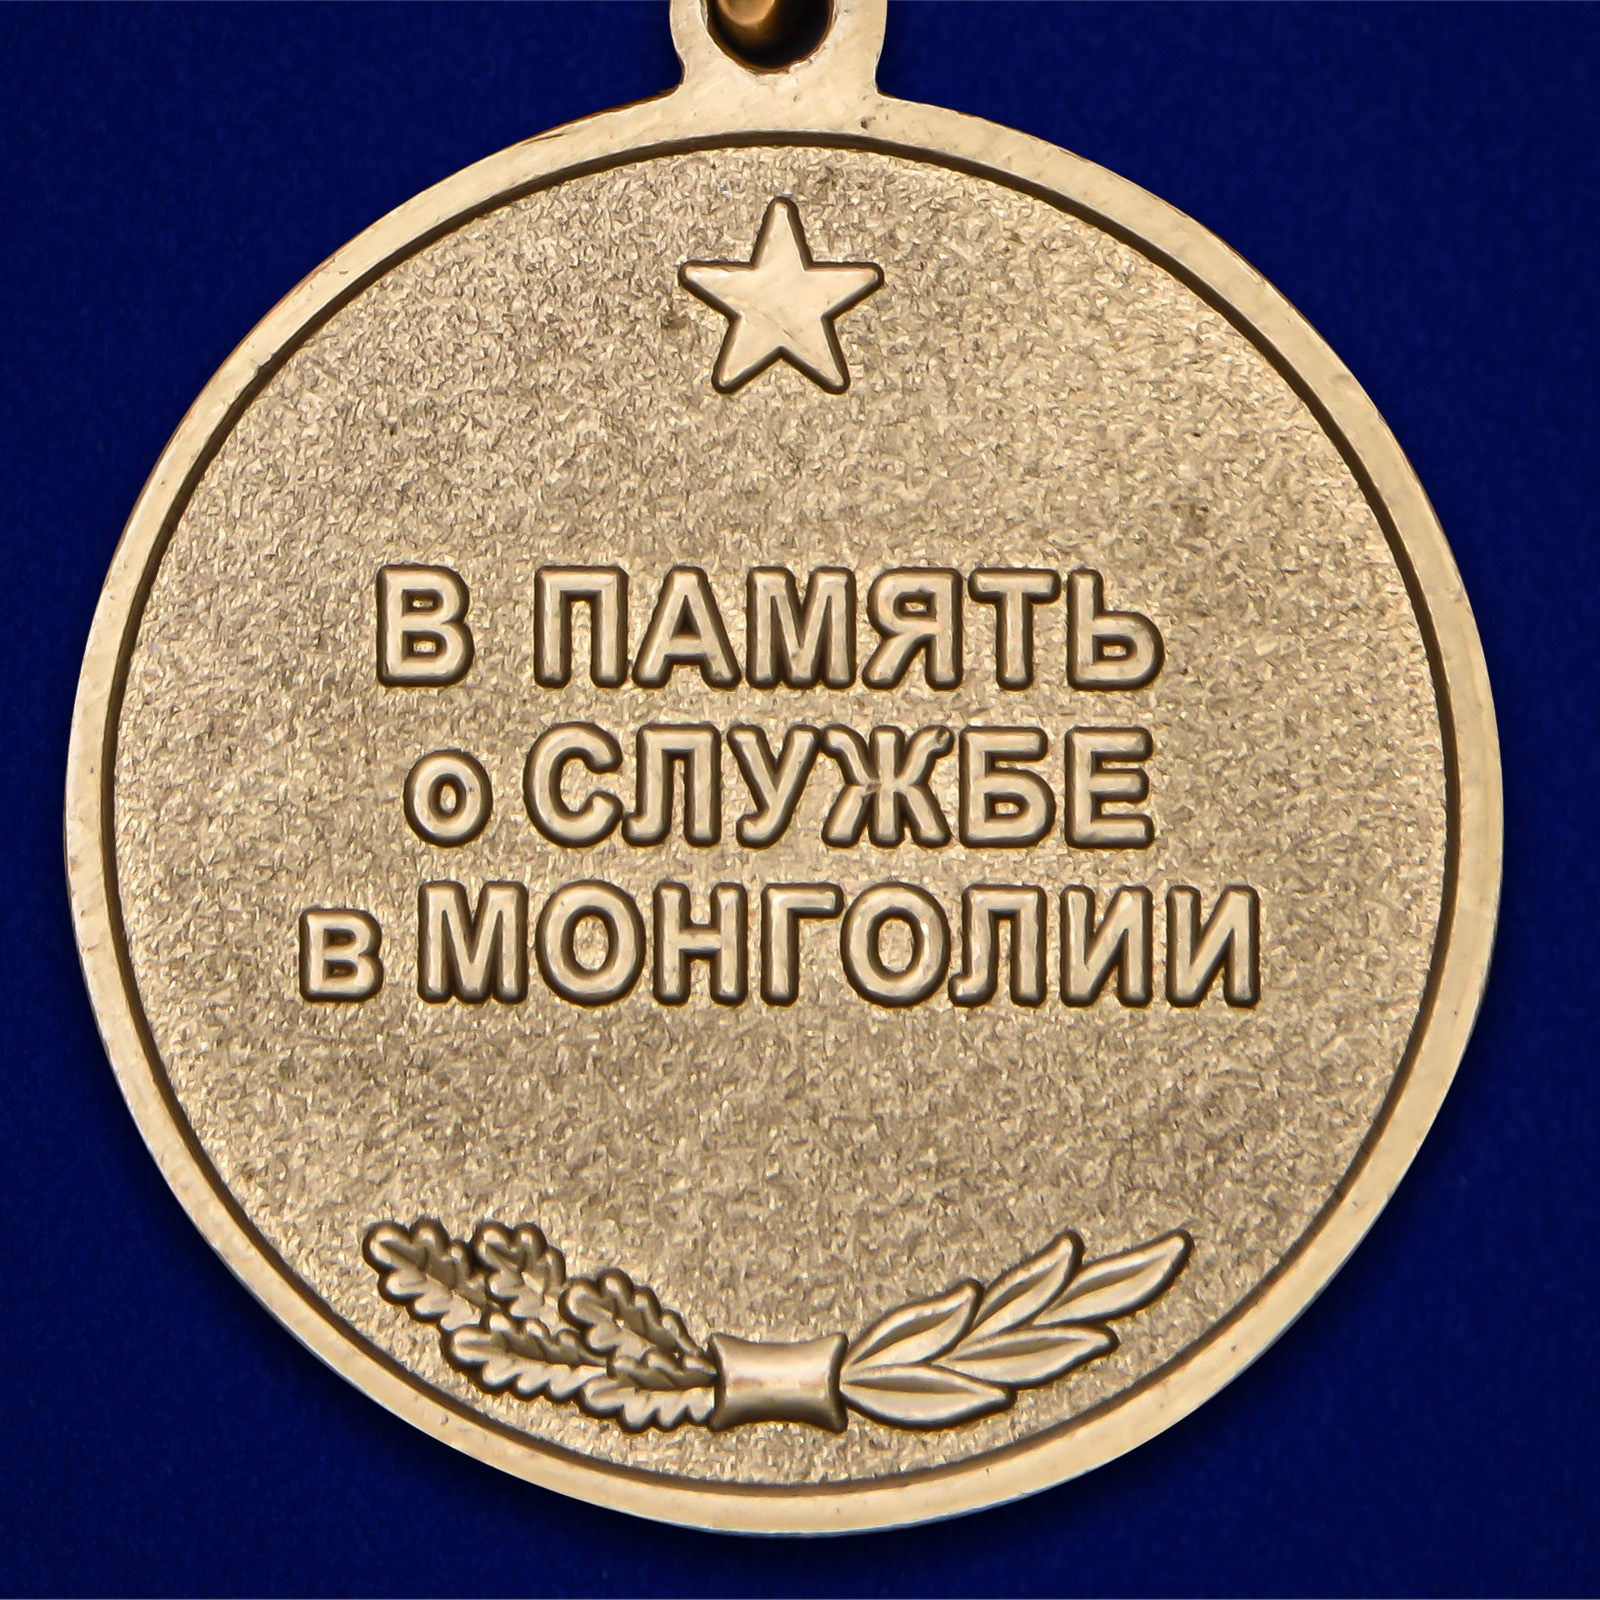 Наградная медаль "39 Армия ЗАБВО. Монголия" 